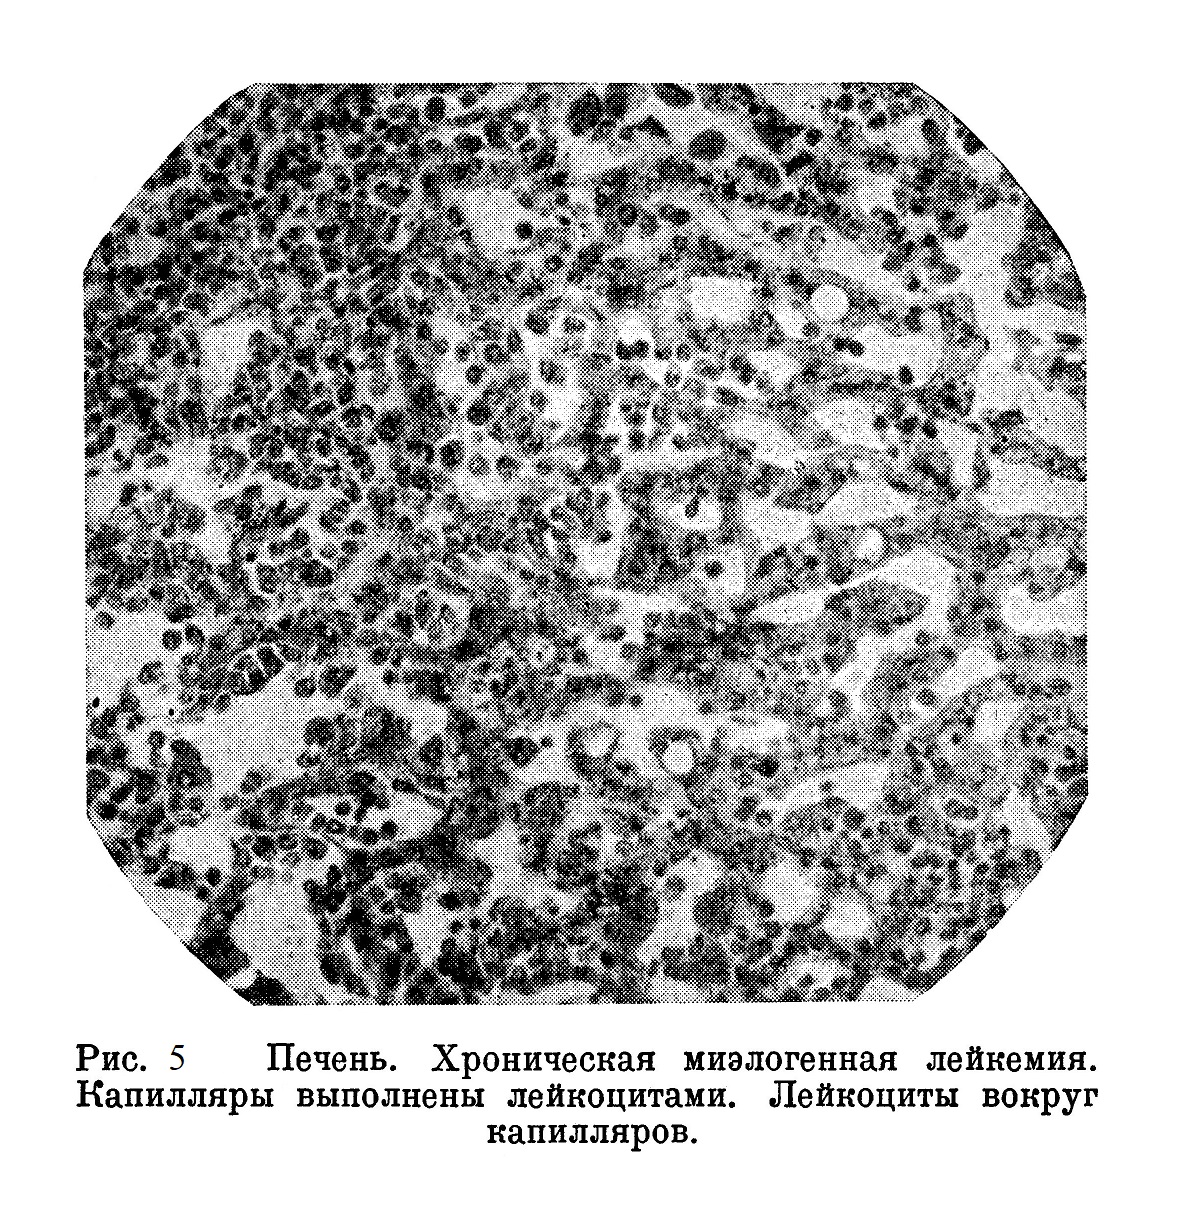 Печень. Хроническая миэлогенная лейкемия. Капилляры выполнены лейкоцитами. Лейкоциты вокруг капилляров.